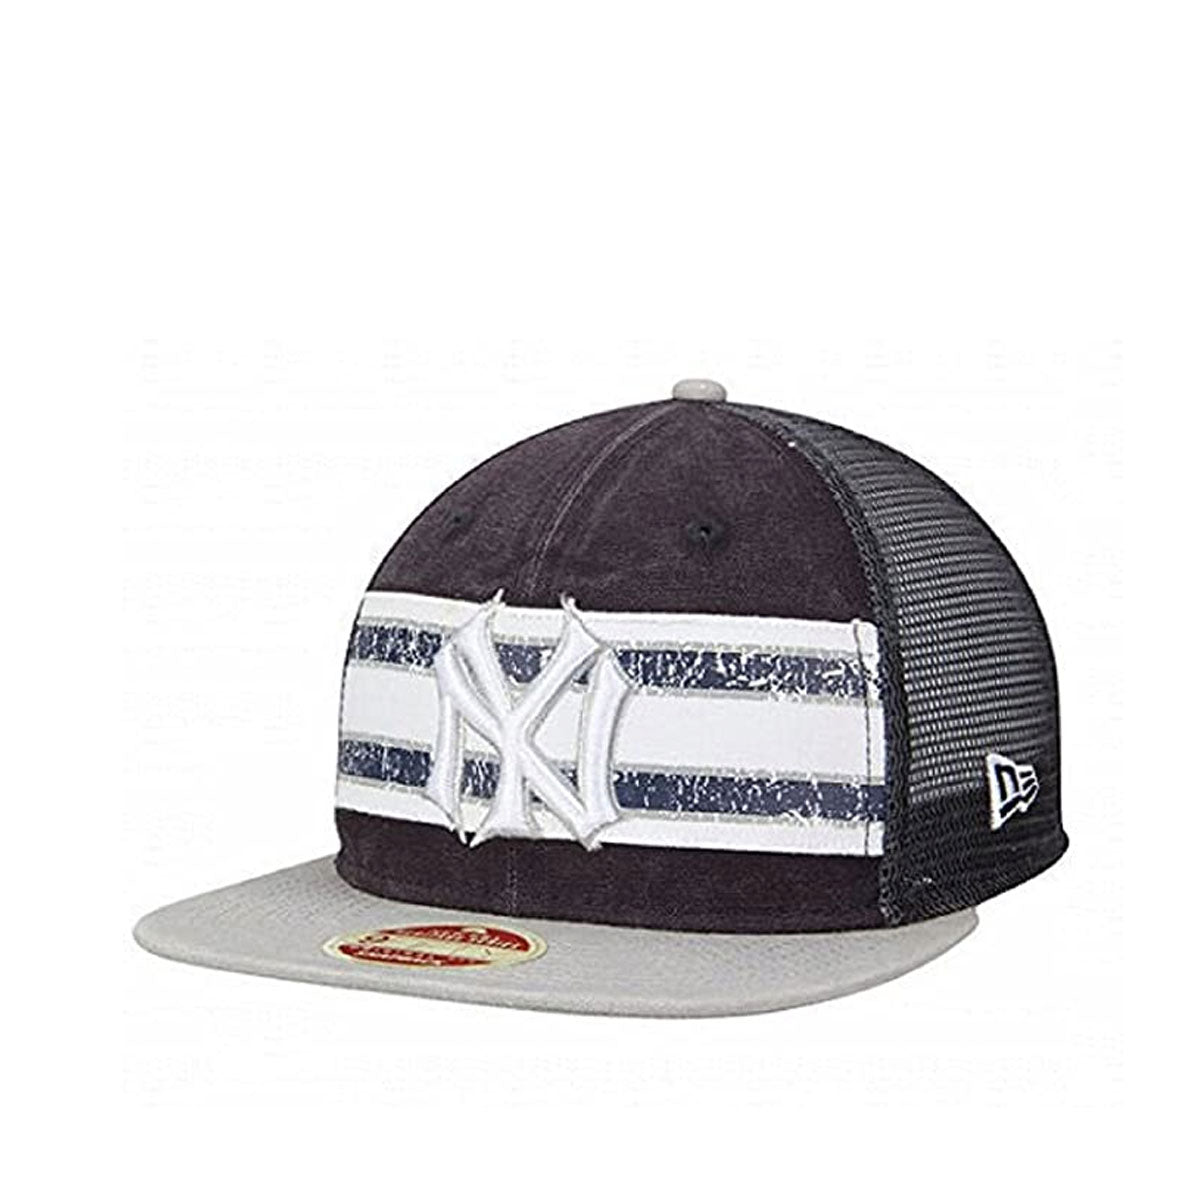 New Era 9Fifty NY Yankees Black/White Snapback Baseball Cap